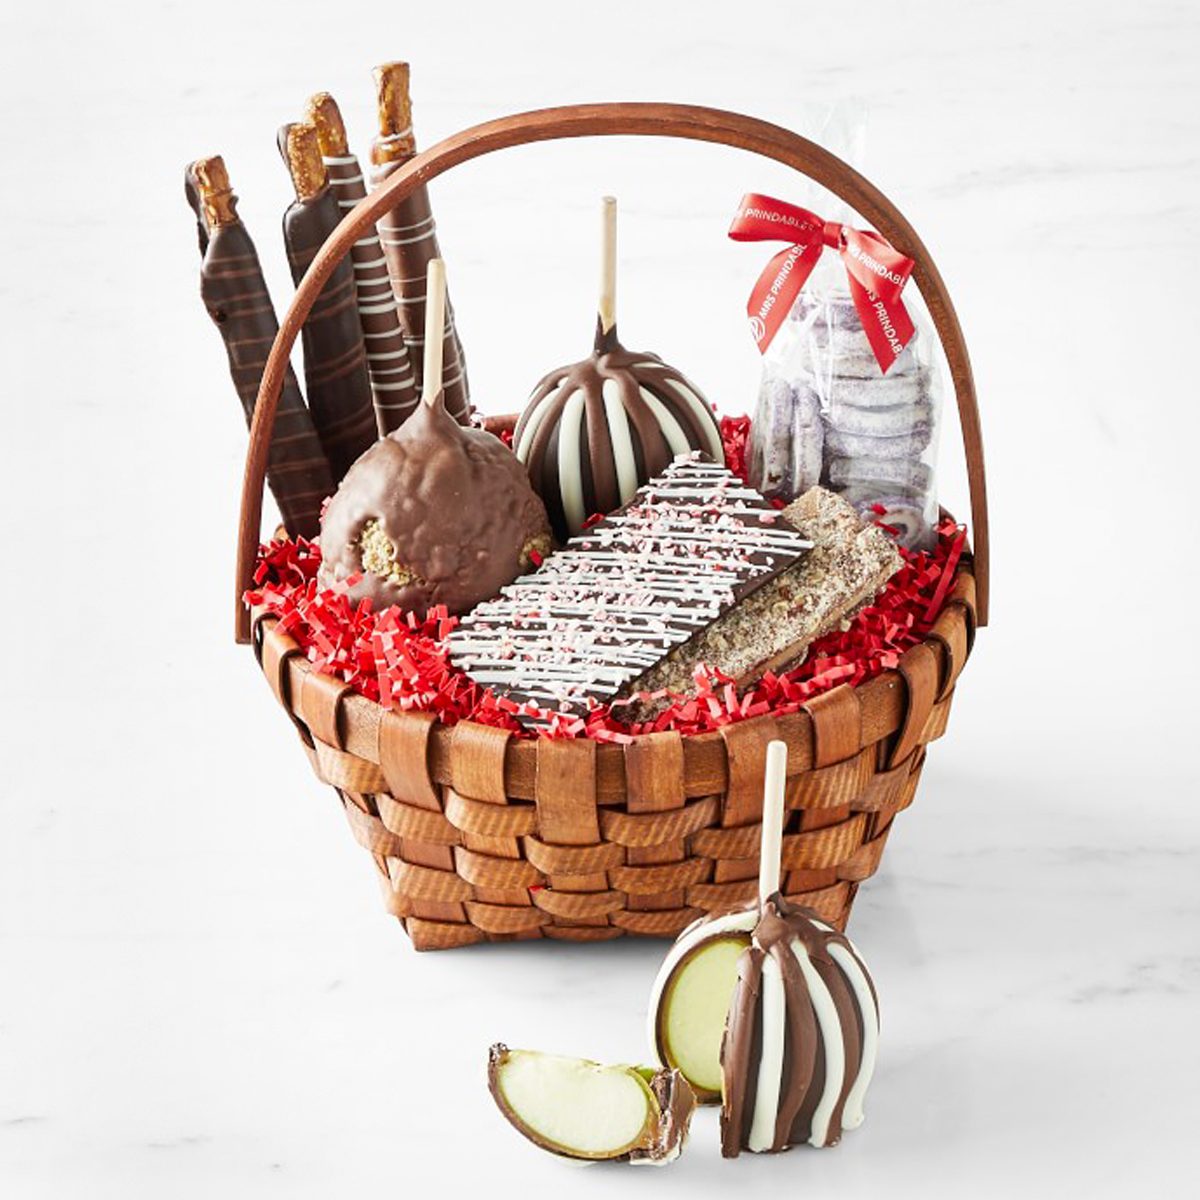 Holiday Caramel Apple Gift Basket Ecomm Williams Sonoma.com